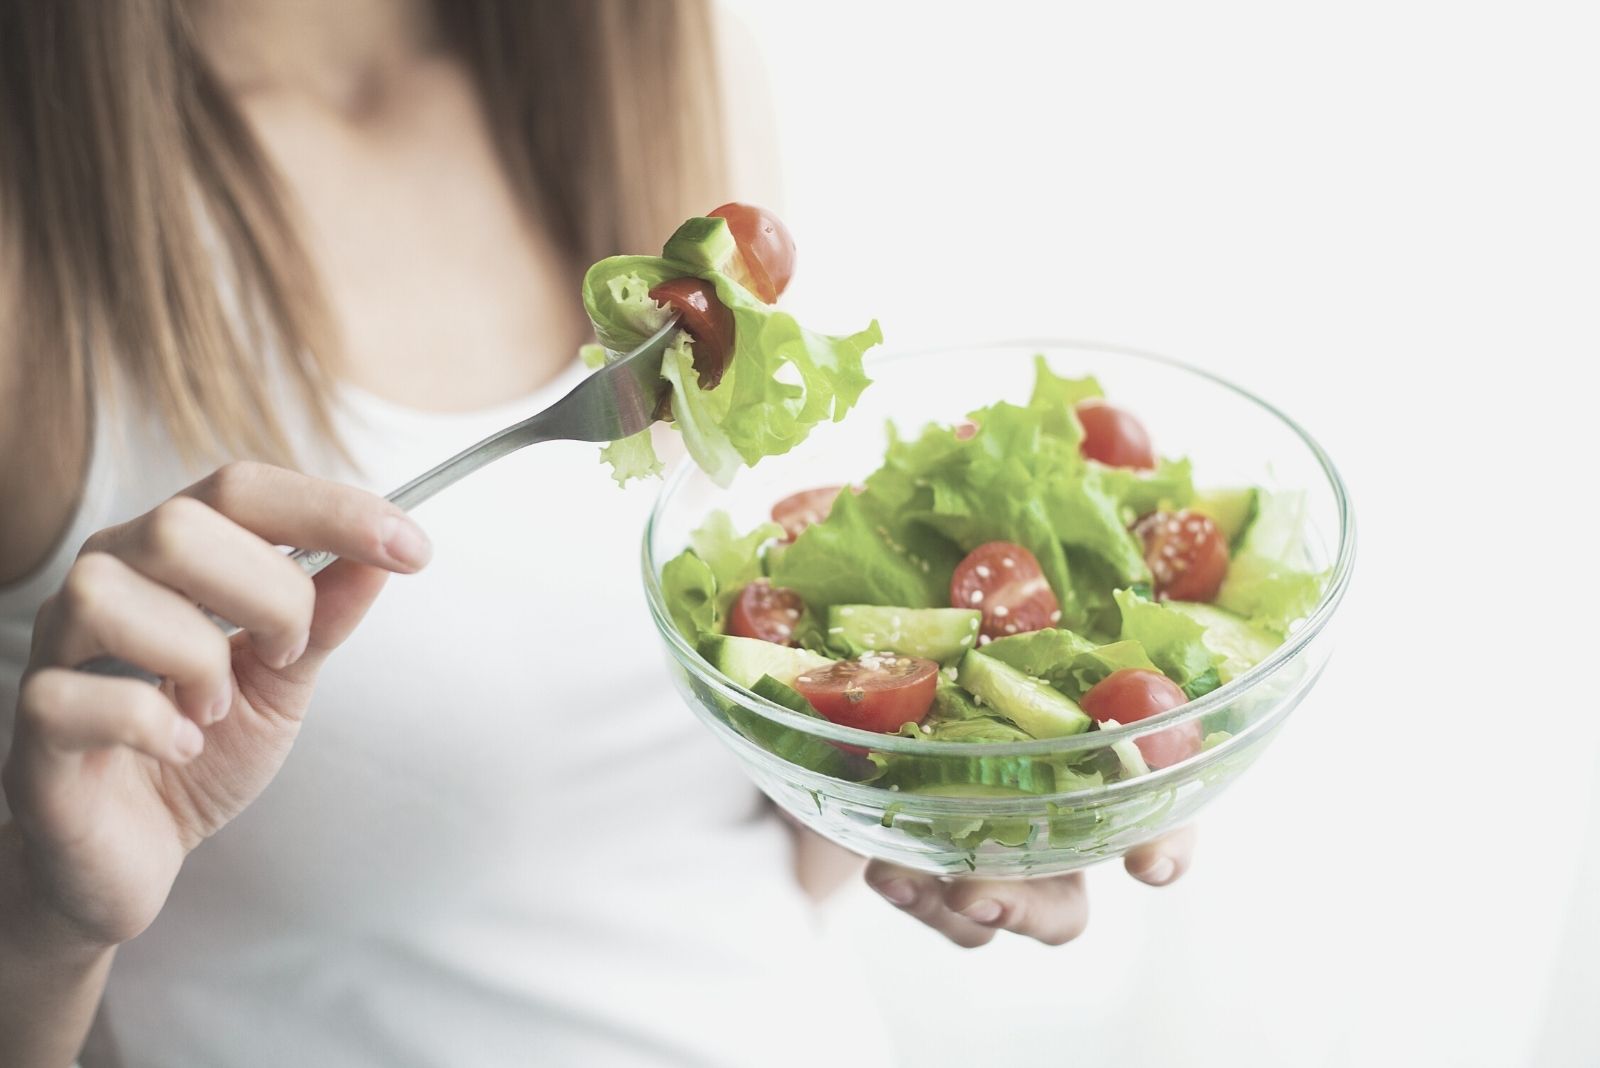 Donna che mangia un'insalata sana in un'immagine ritagliata